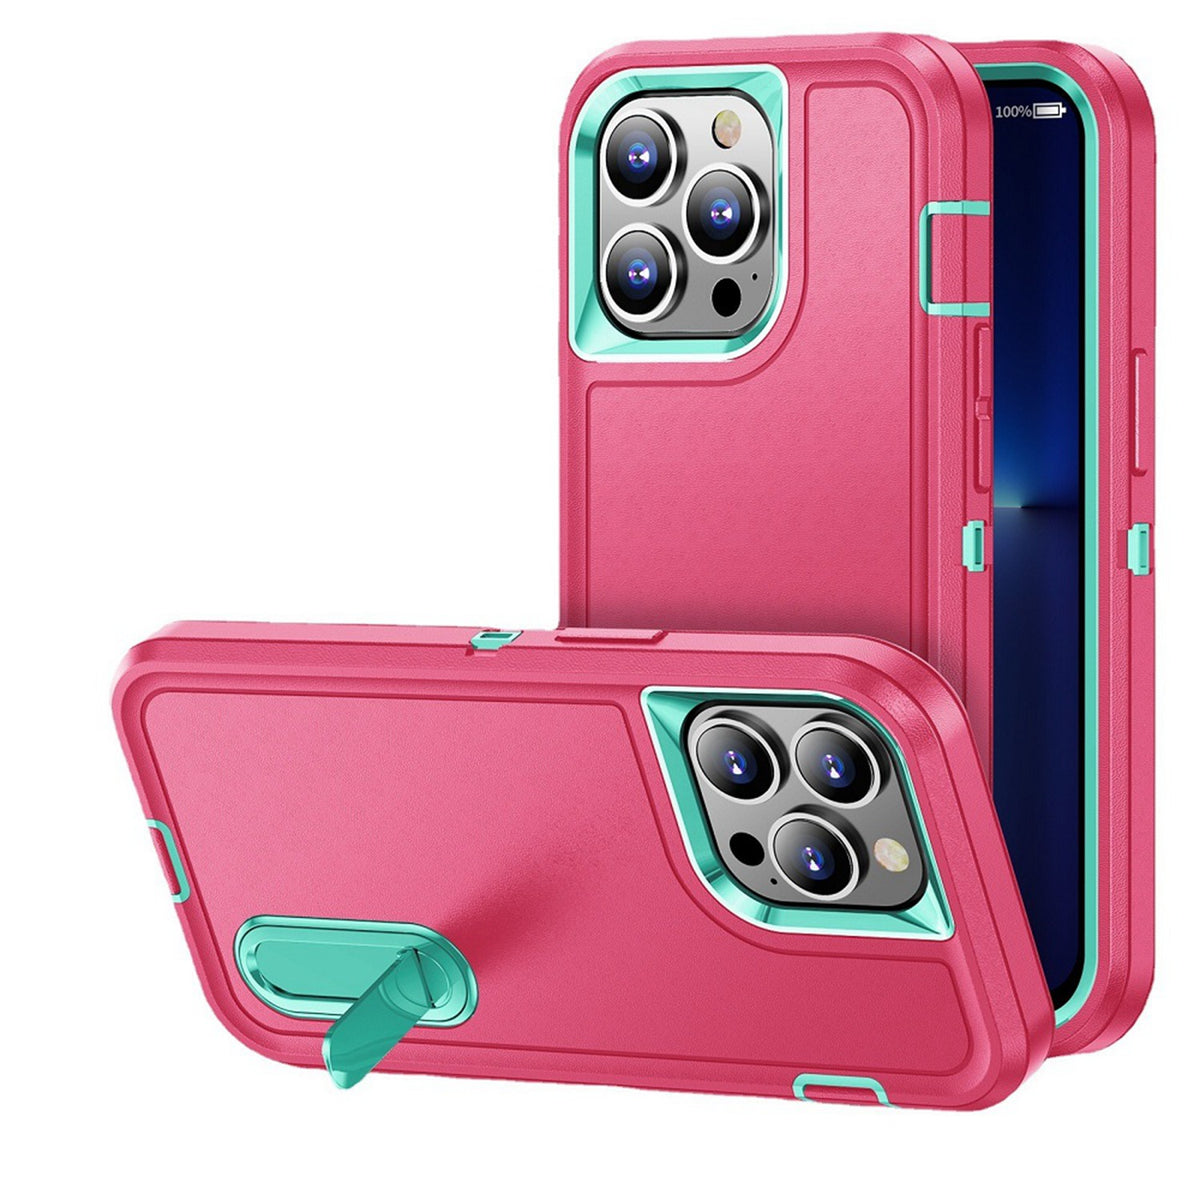 Iphone 7 / 8 / SE Tough Kickstand Case Pink Teal